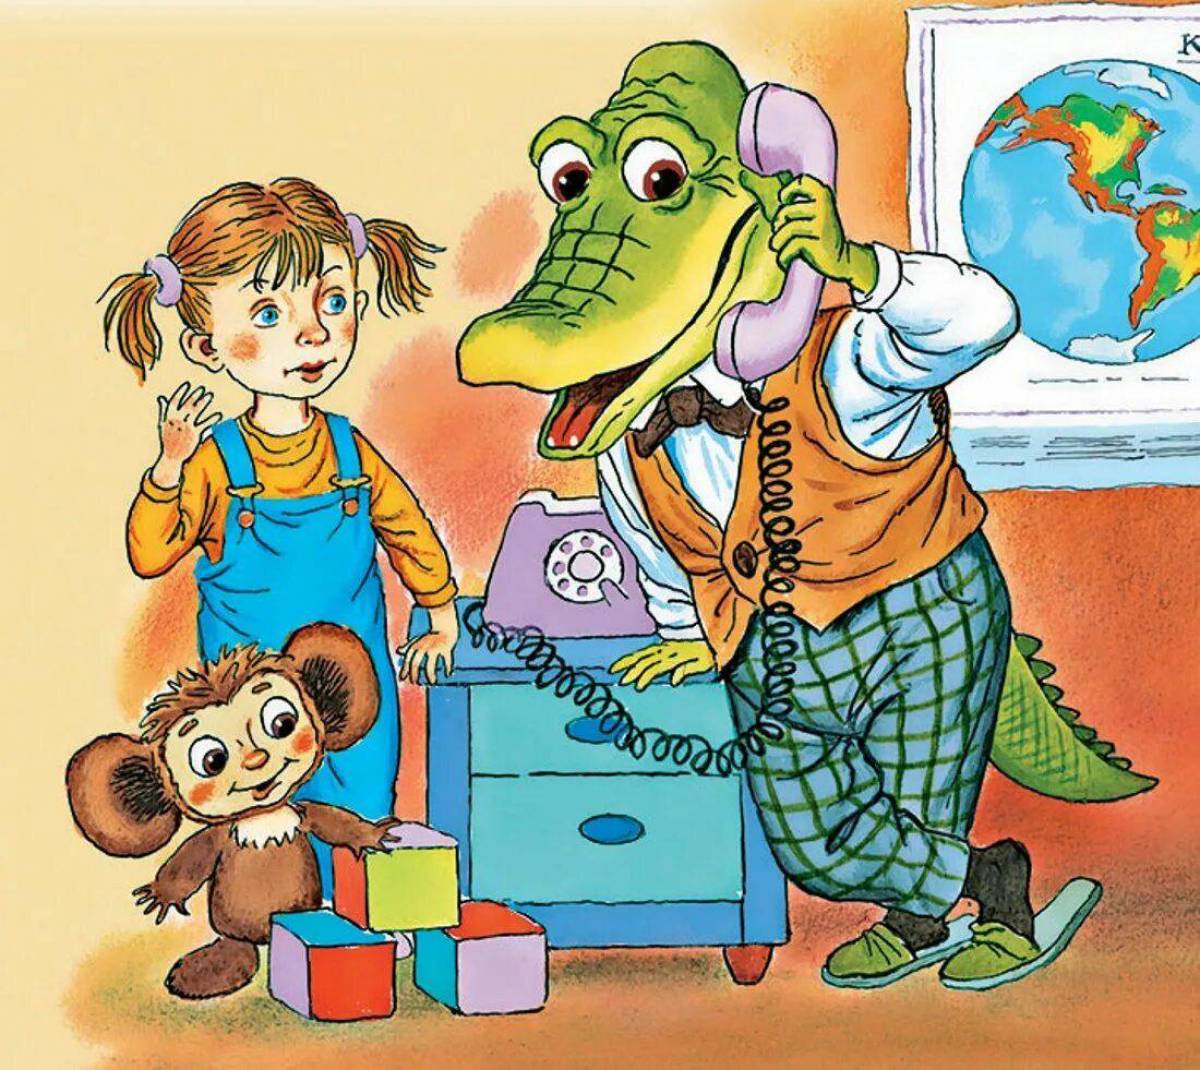 Сказка успенского крокодил гена и его друзья. Успенский э.н. "крокодил Гена и его друзья".